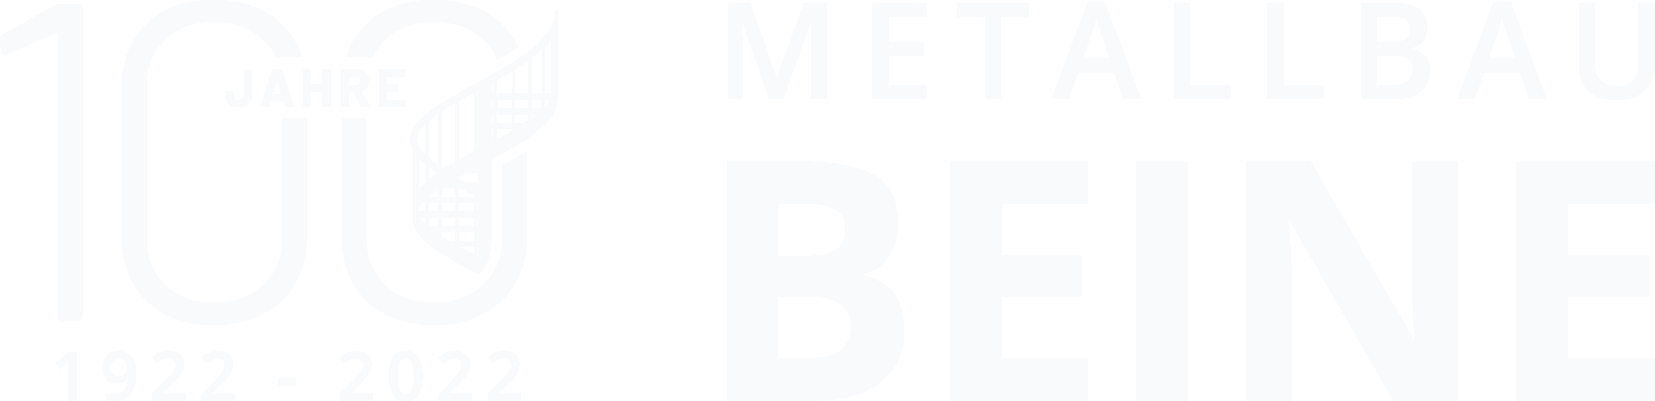 Metallbau Beine Logo Weiß Transparent Header